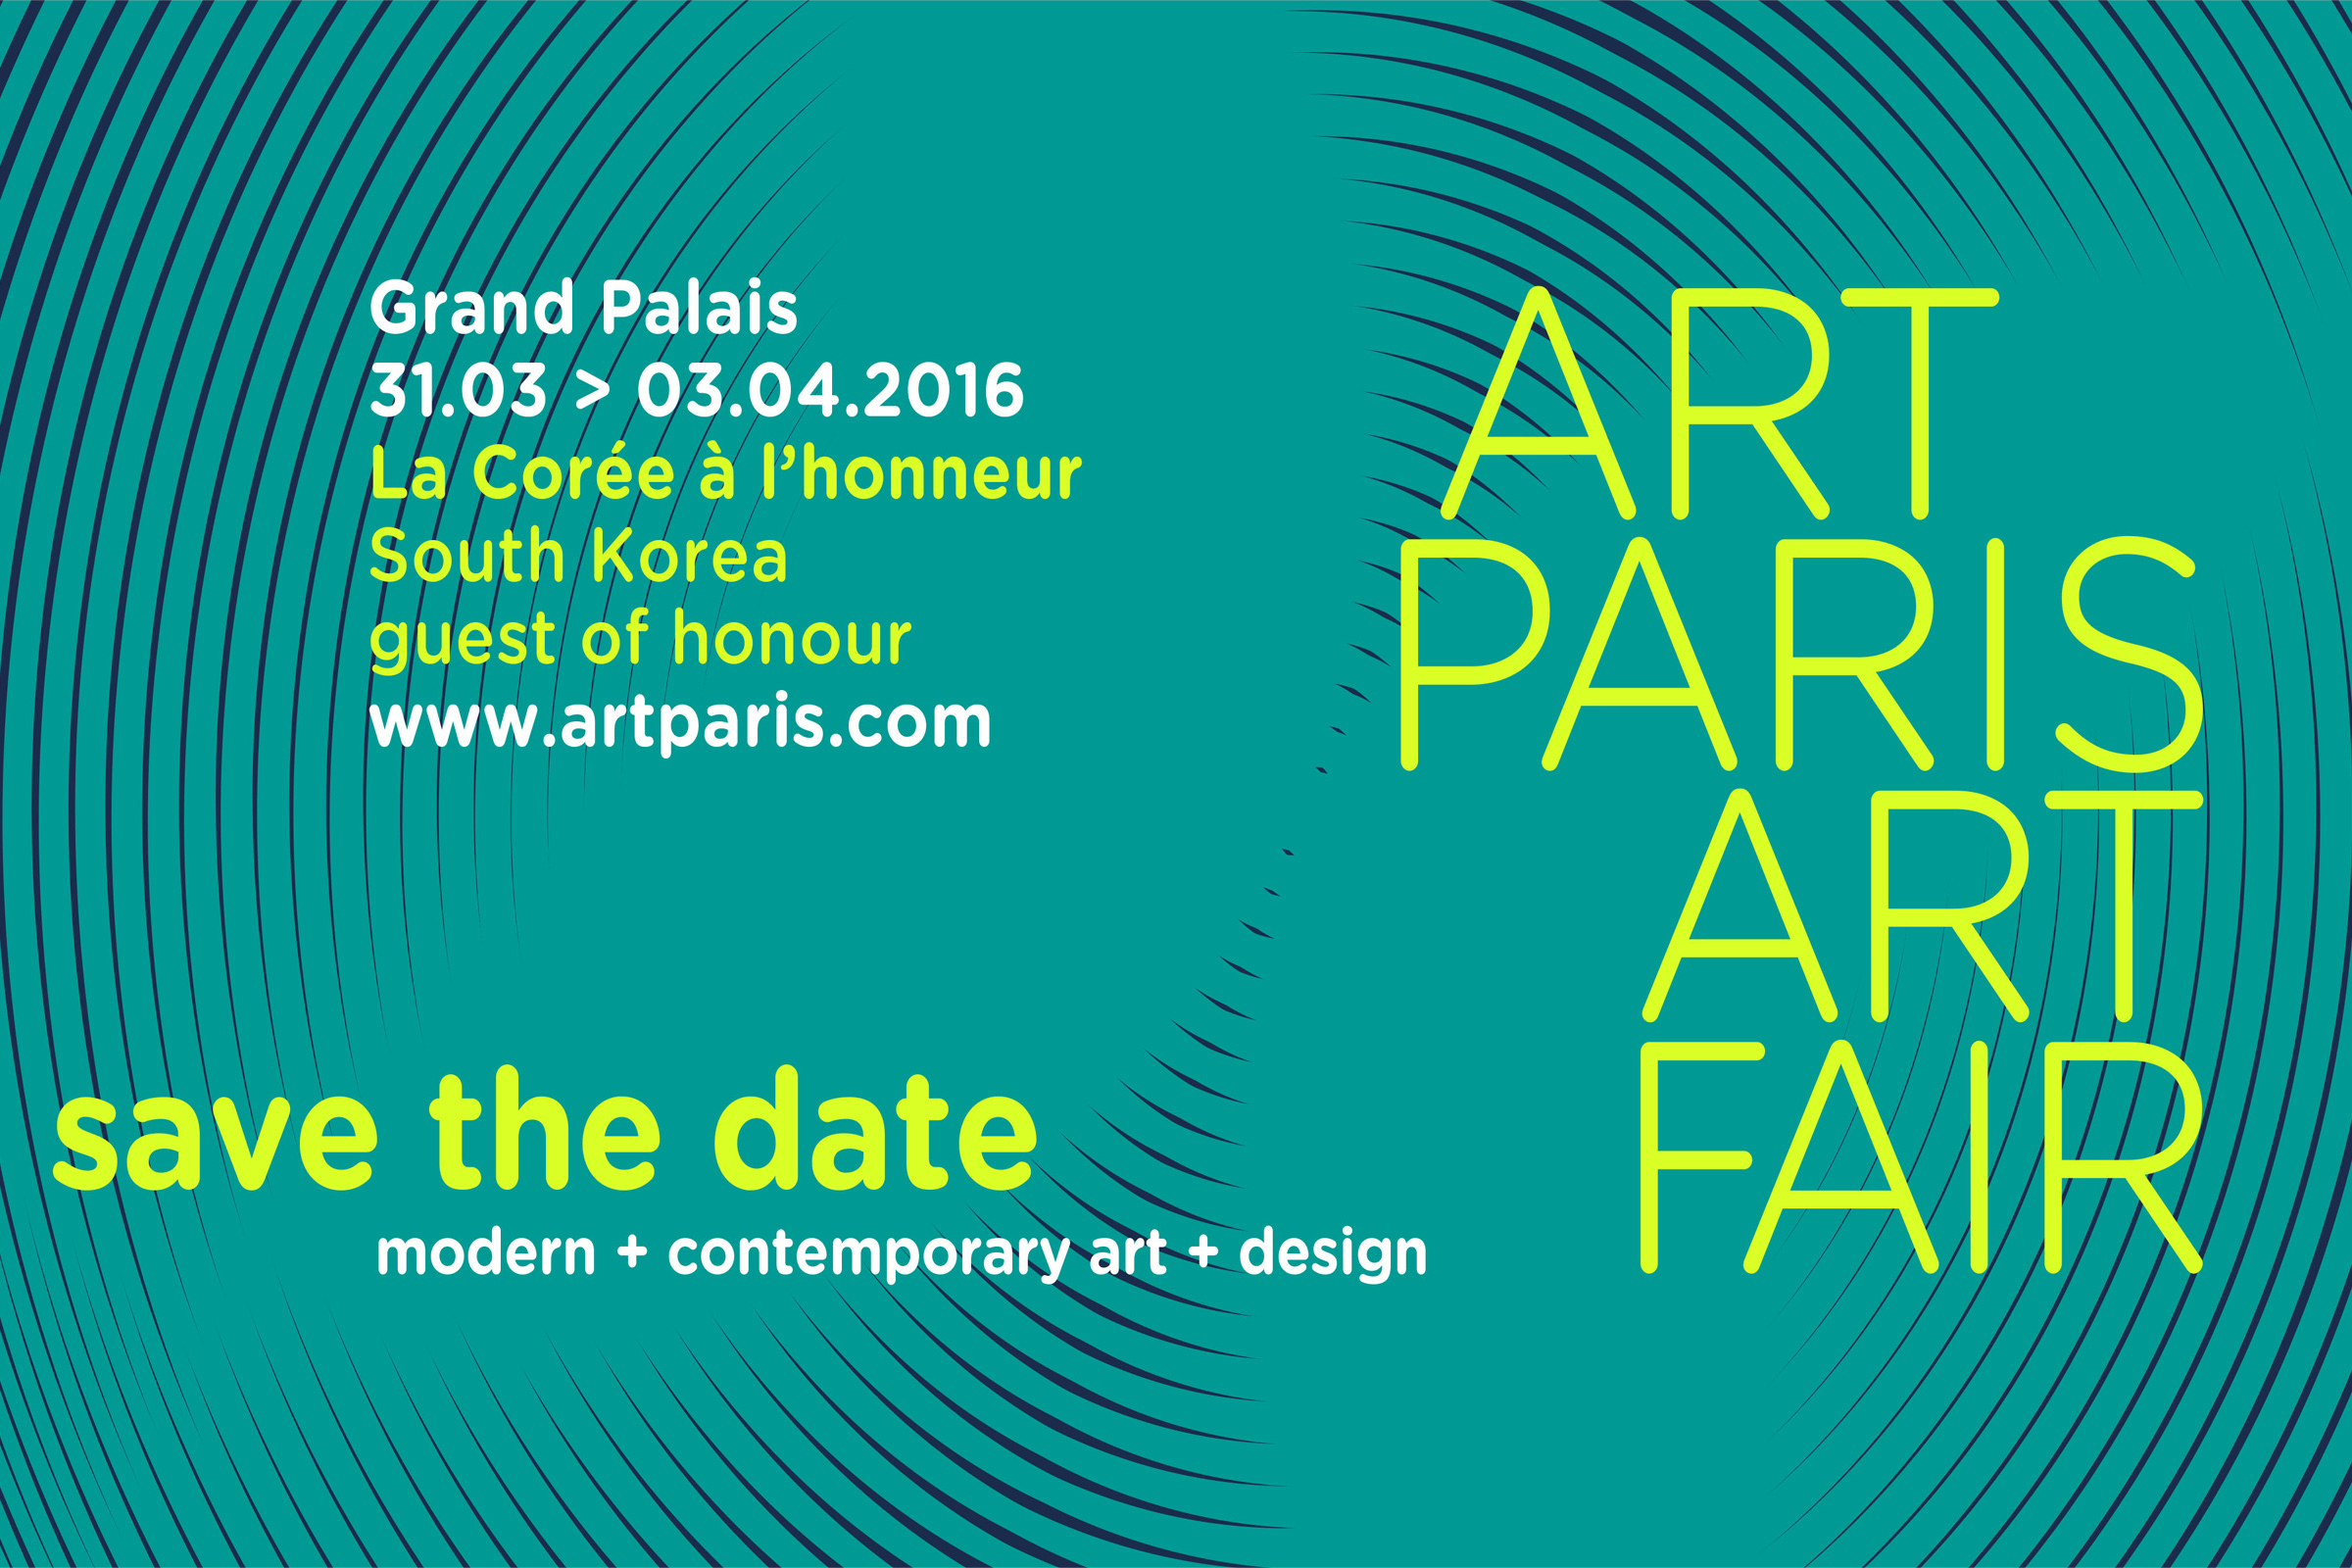 BARDULA - Art paris art fair 2016 - 1